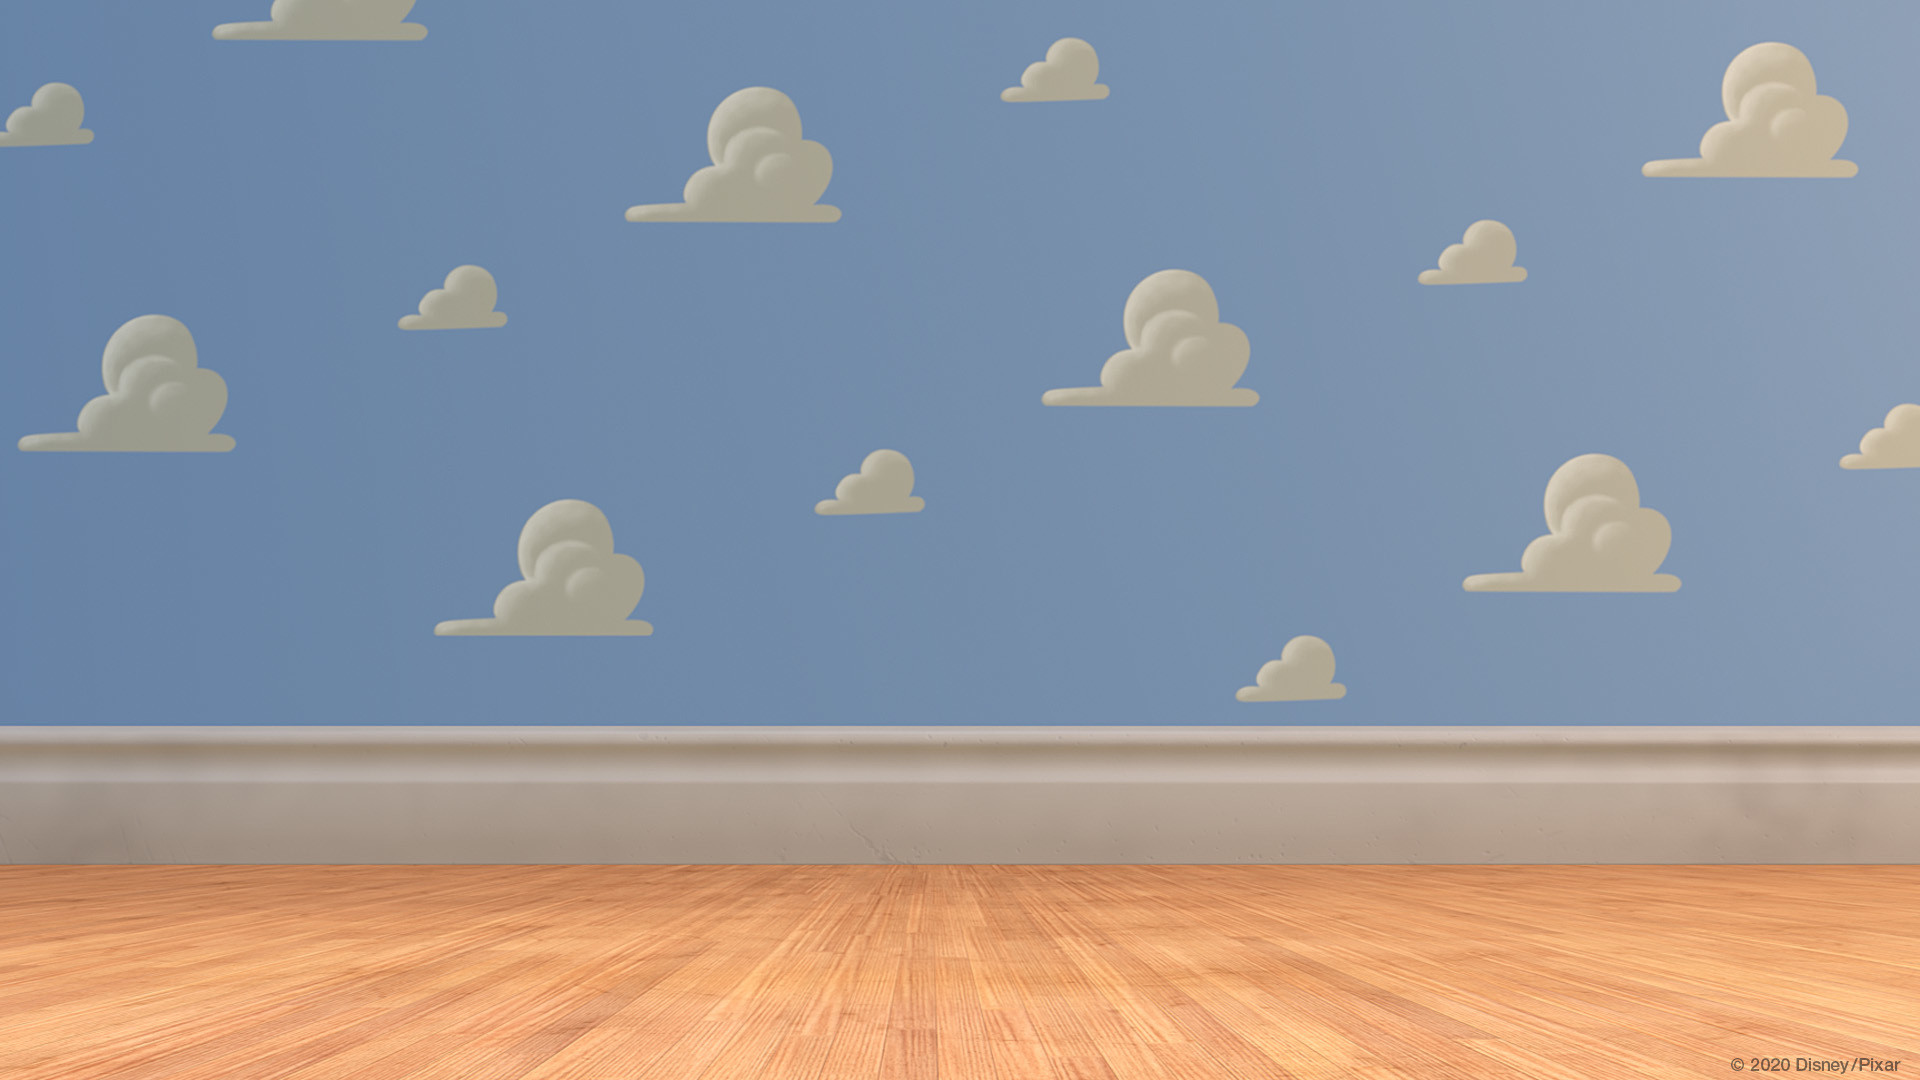 皮克斯 宮崎駿釋出虛擬背景圖免費下載一秒讓你置身安弟房間 龍貓樹洞 Et Fashion Ettoday新聞雲